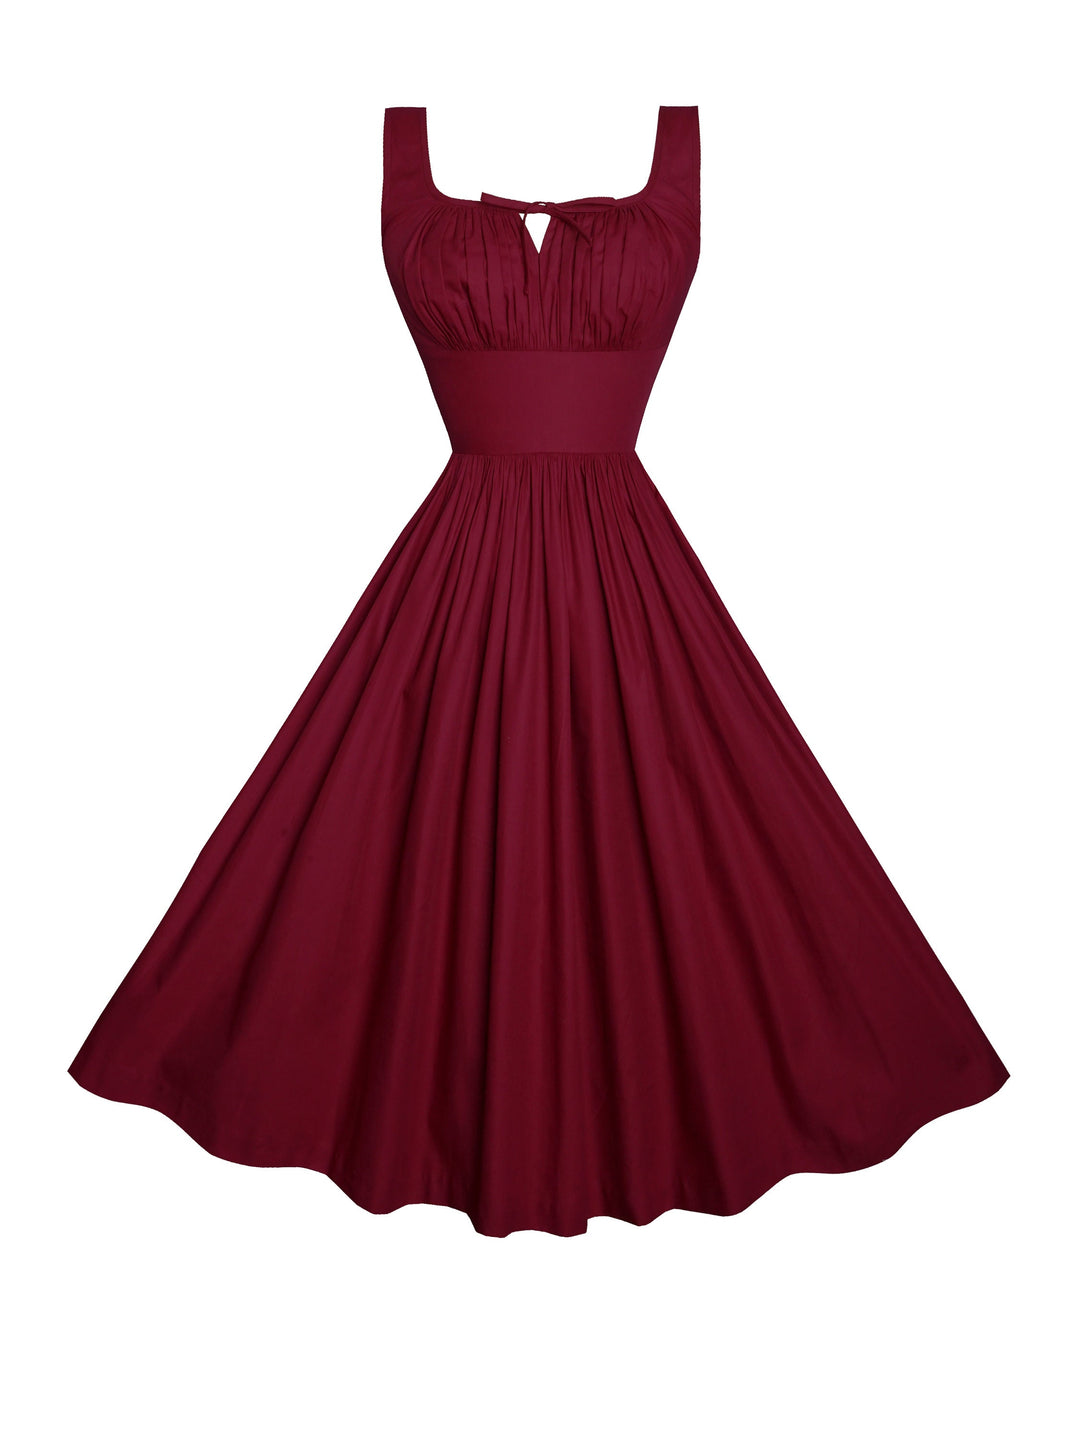 MTO - Michelle Dress in Burgundy Cotton